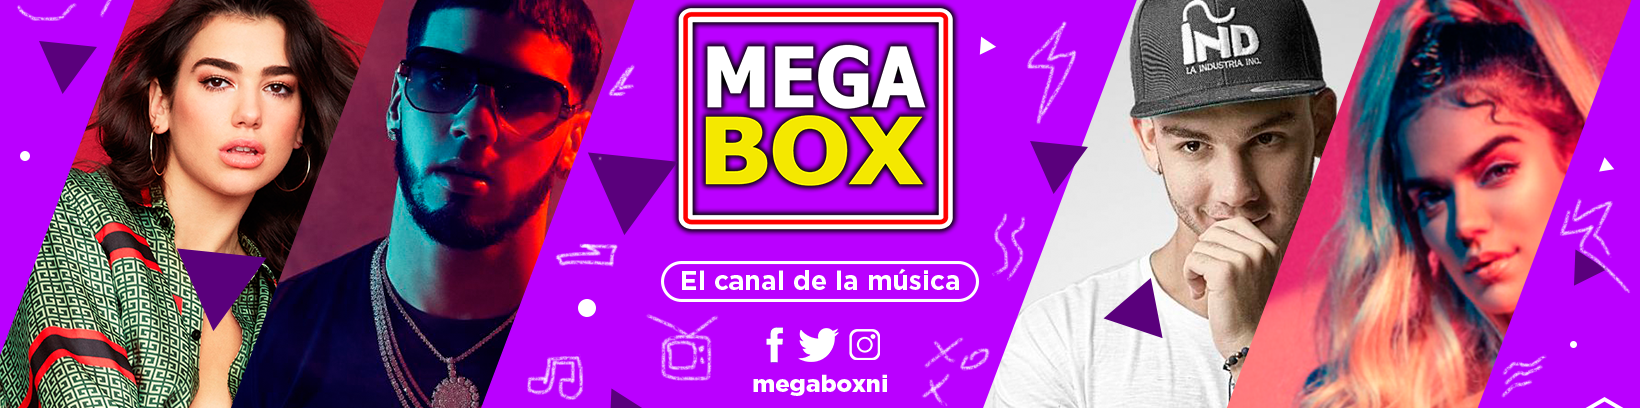 MEGABOX - MUSICA